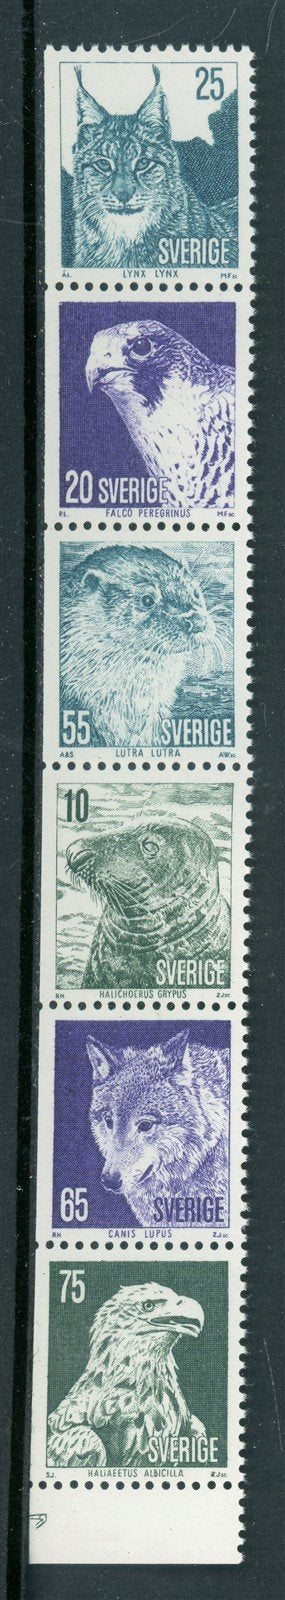 Sweden Scott #1020a MNH PANE Protected Animals FAUNA CV$2+ 417369